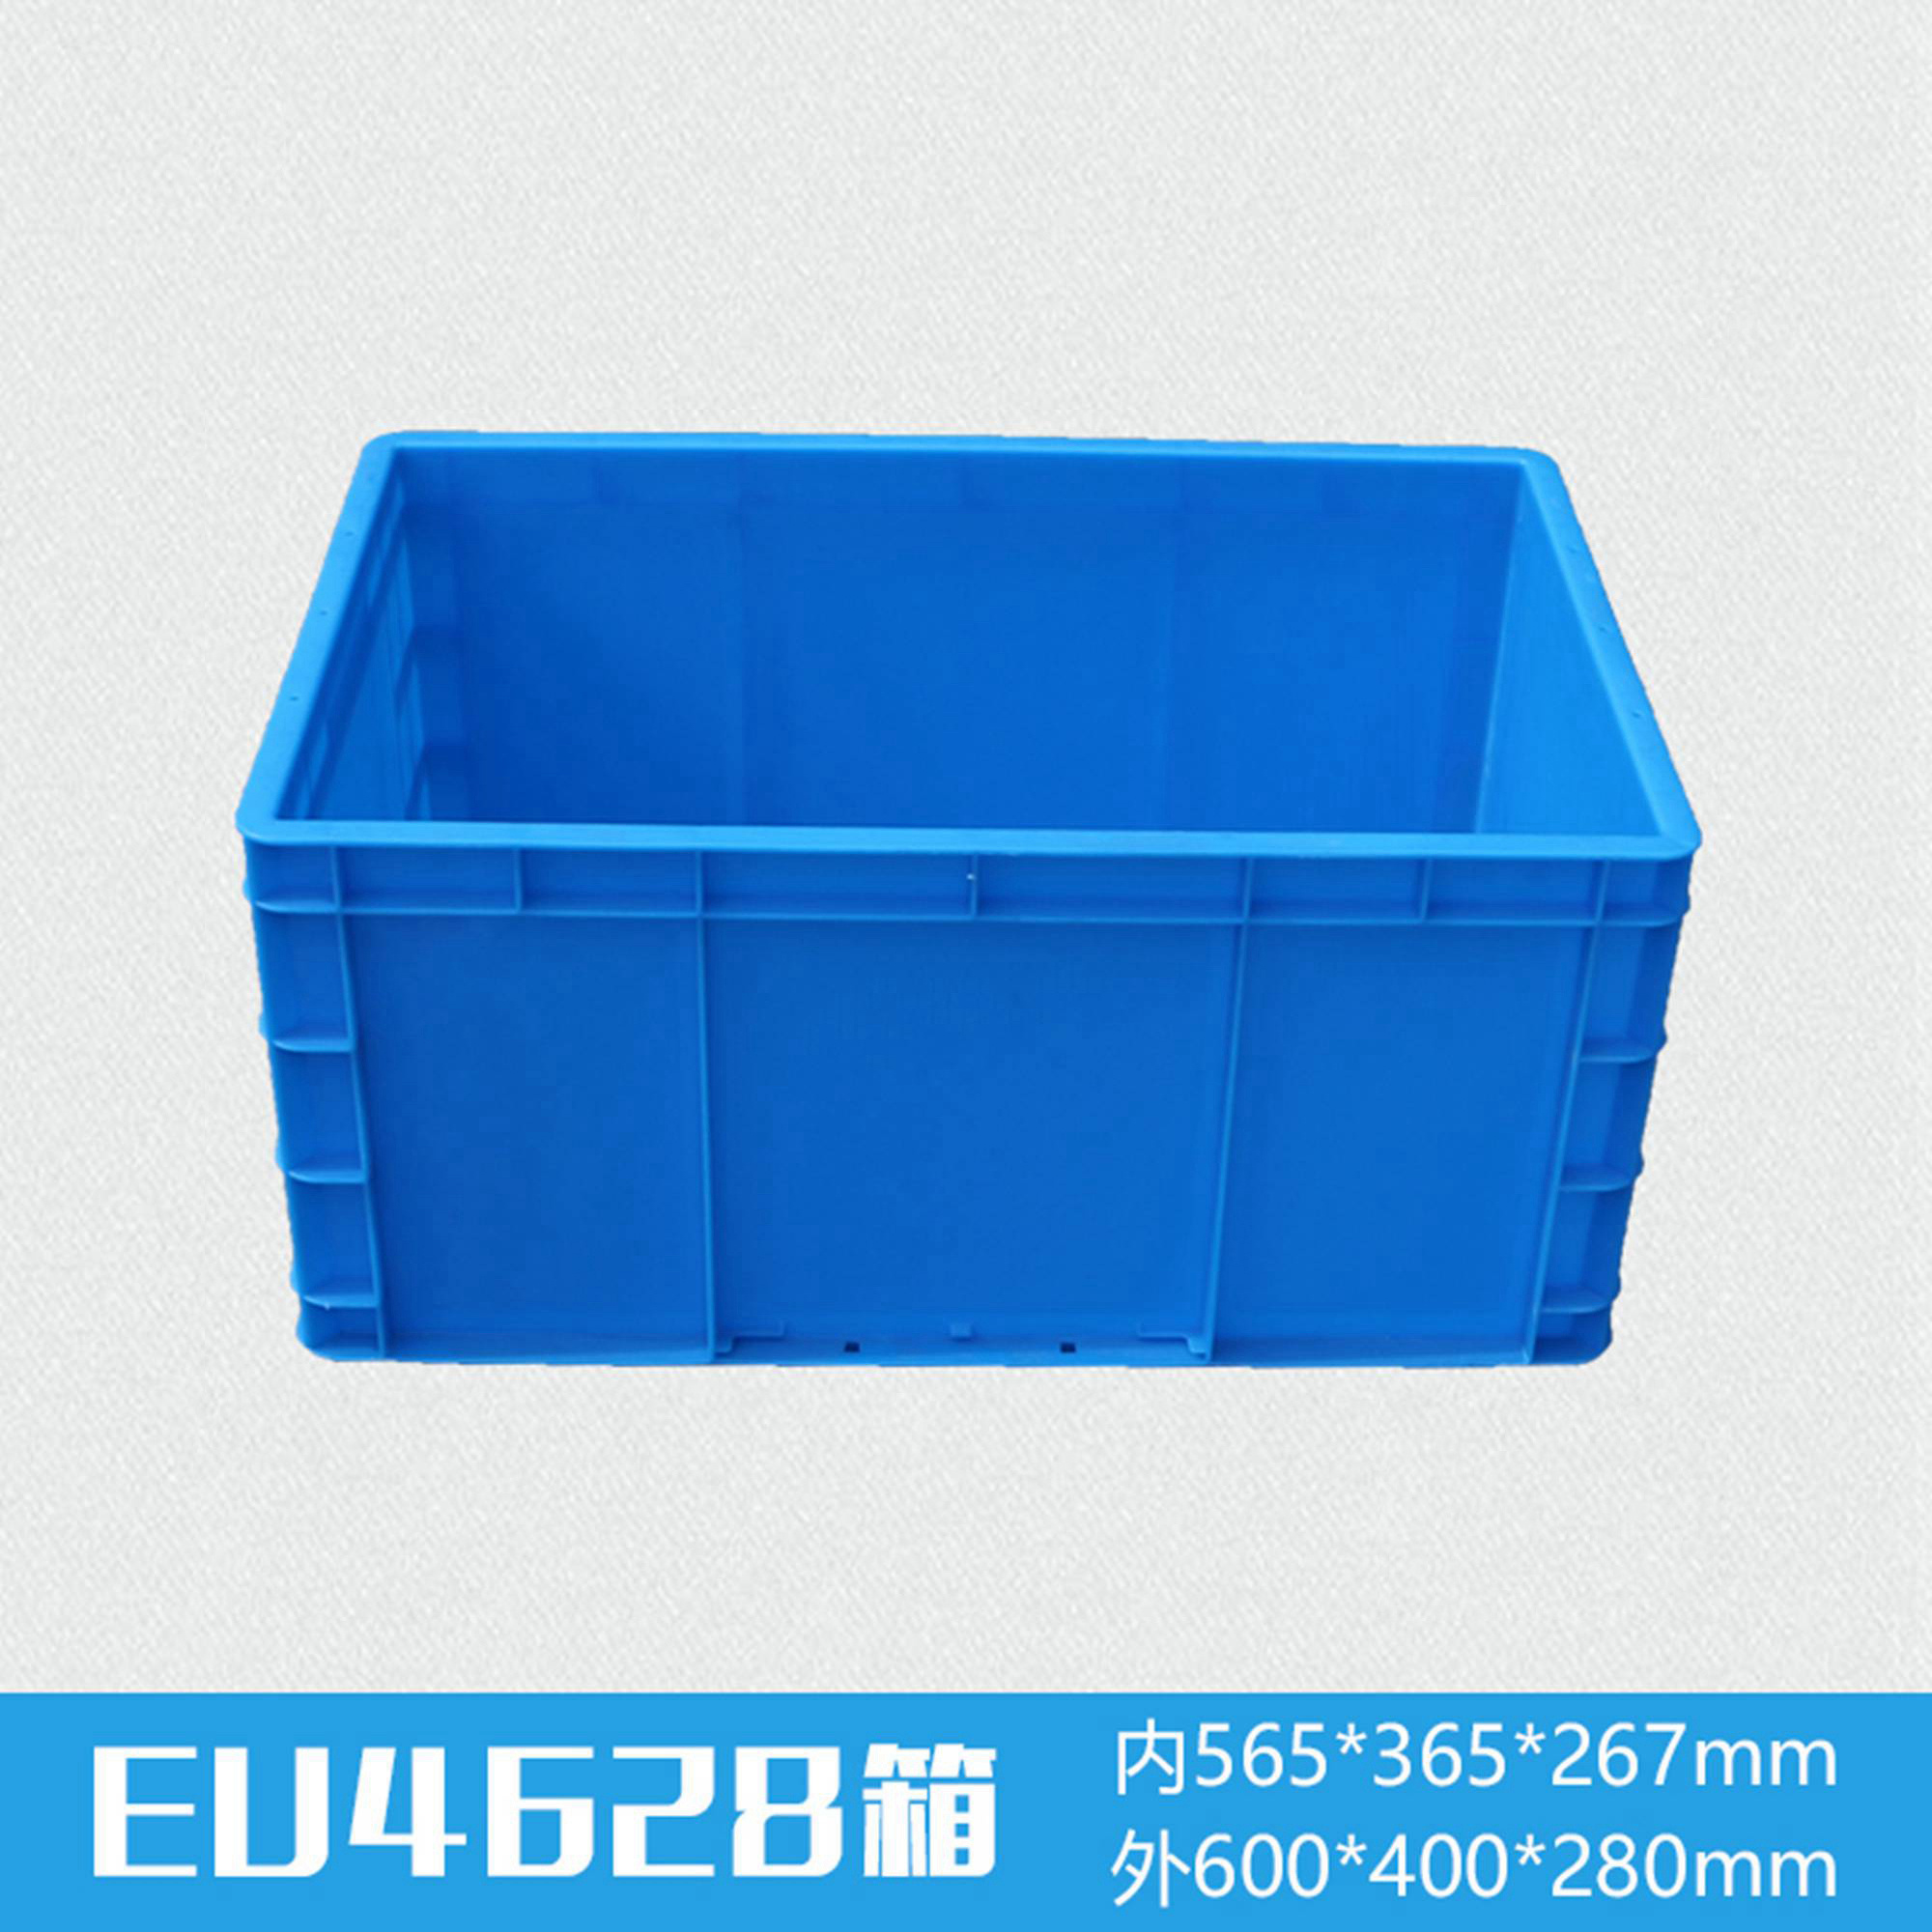 EU4628塑料物流箱